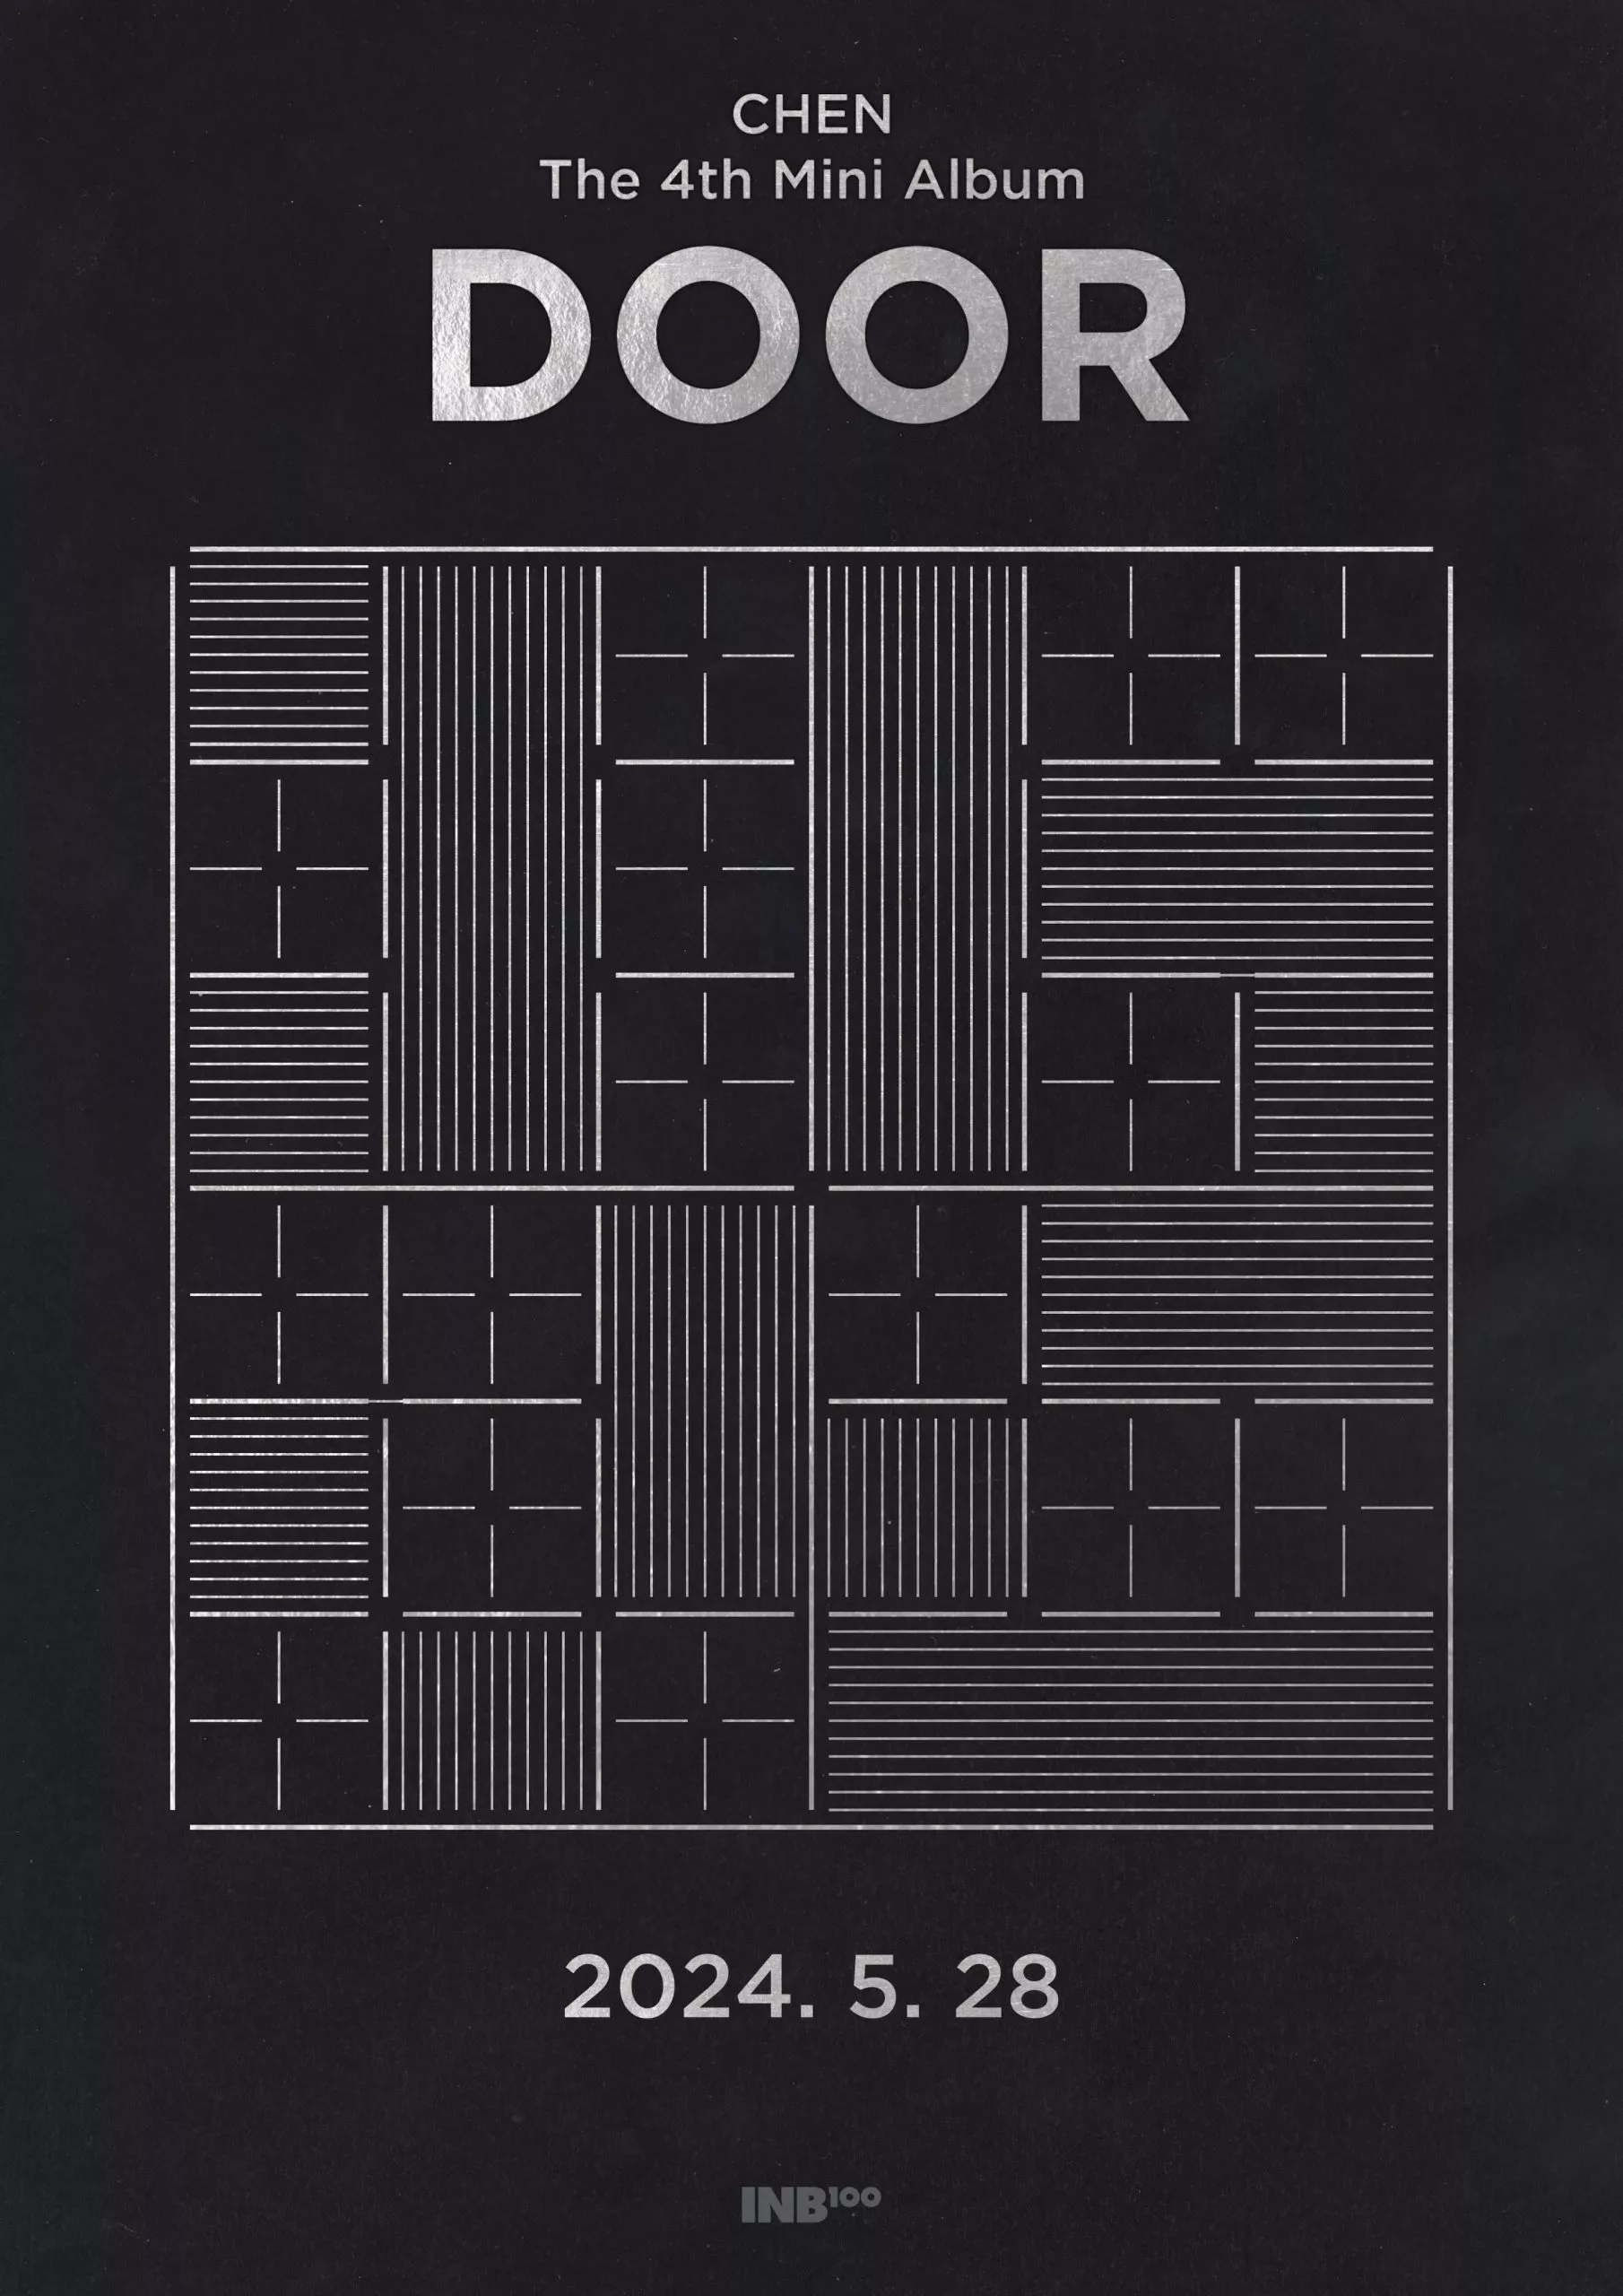 Чен из EXO анонсирует сольный камбэк с 4-м мини-альбомом "DOOR"